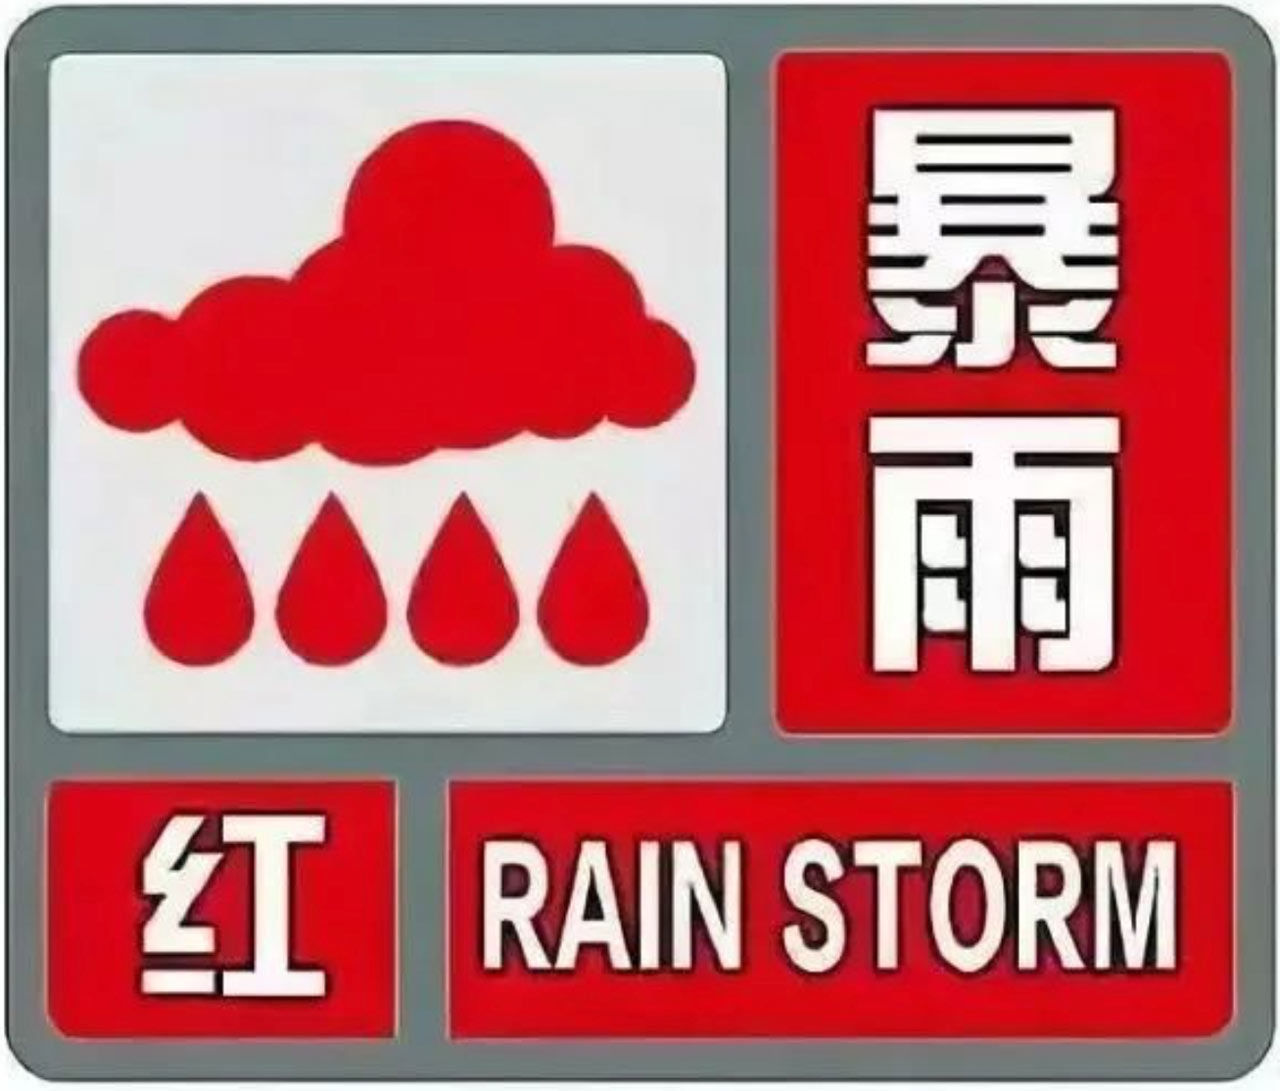 21日,河北邱县气象台继续发布暴雨红色预警信号,目前邱县陈村乡降水量